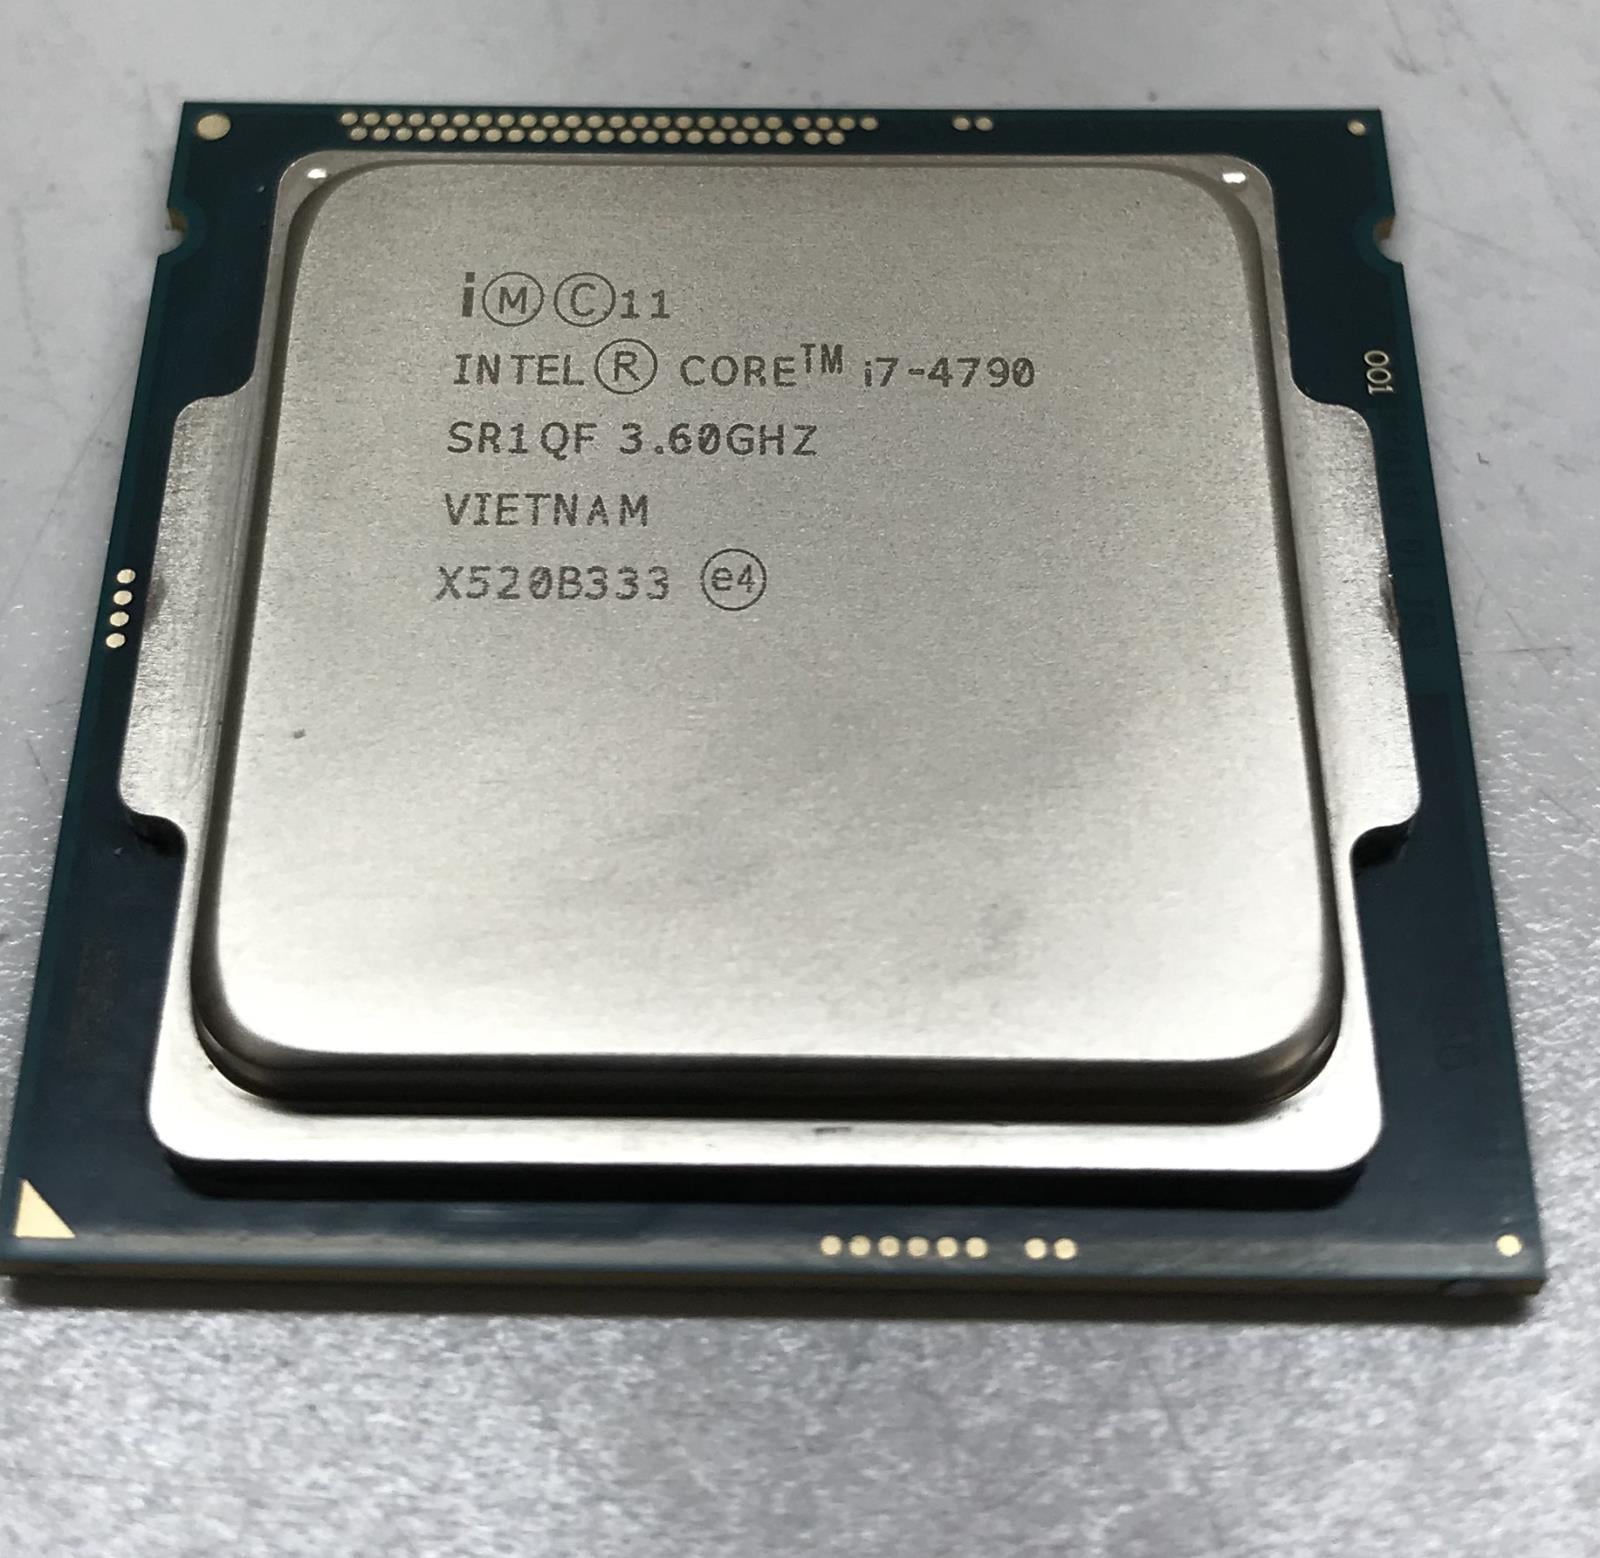 Kamer dun slank Intel i7-4790 3.6 GHz Desktop Quad Core CPU Processor SR1QF - Walmart.com